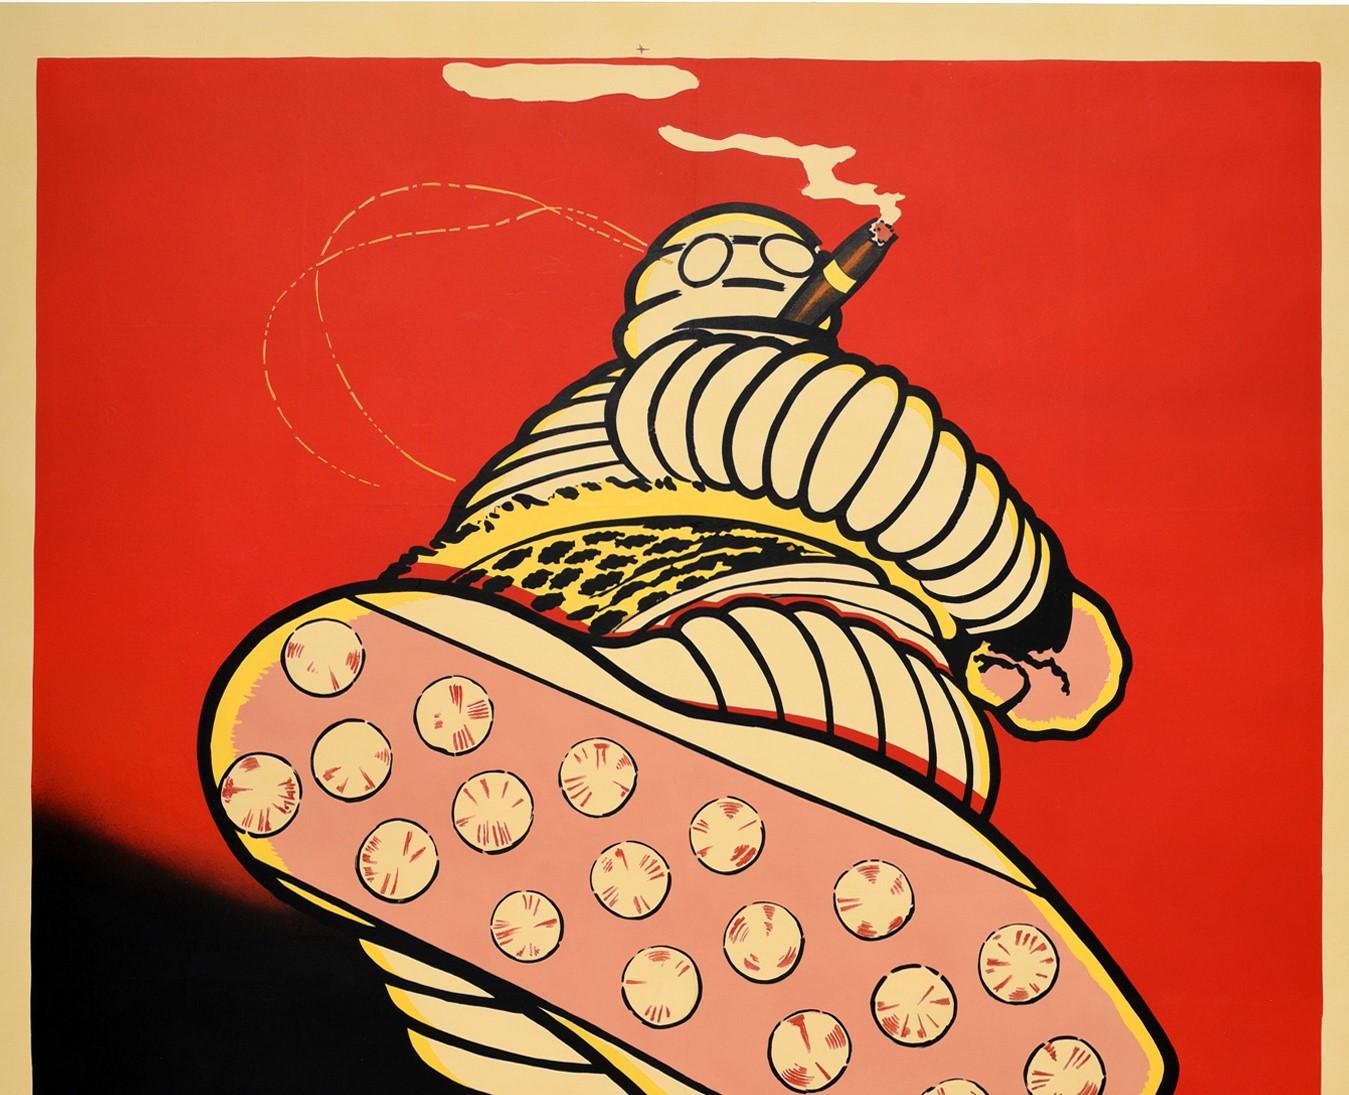 Affiche publicitaire ancienne pour Le Coup De La Semelle Michelin / The Power of the Michelin Sole comportant une superbe illustration du dessinateur français Marius Rossillon (connu sous le nom d'O'Galop ; 1867-1946) qui a créé le personnage